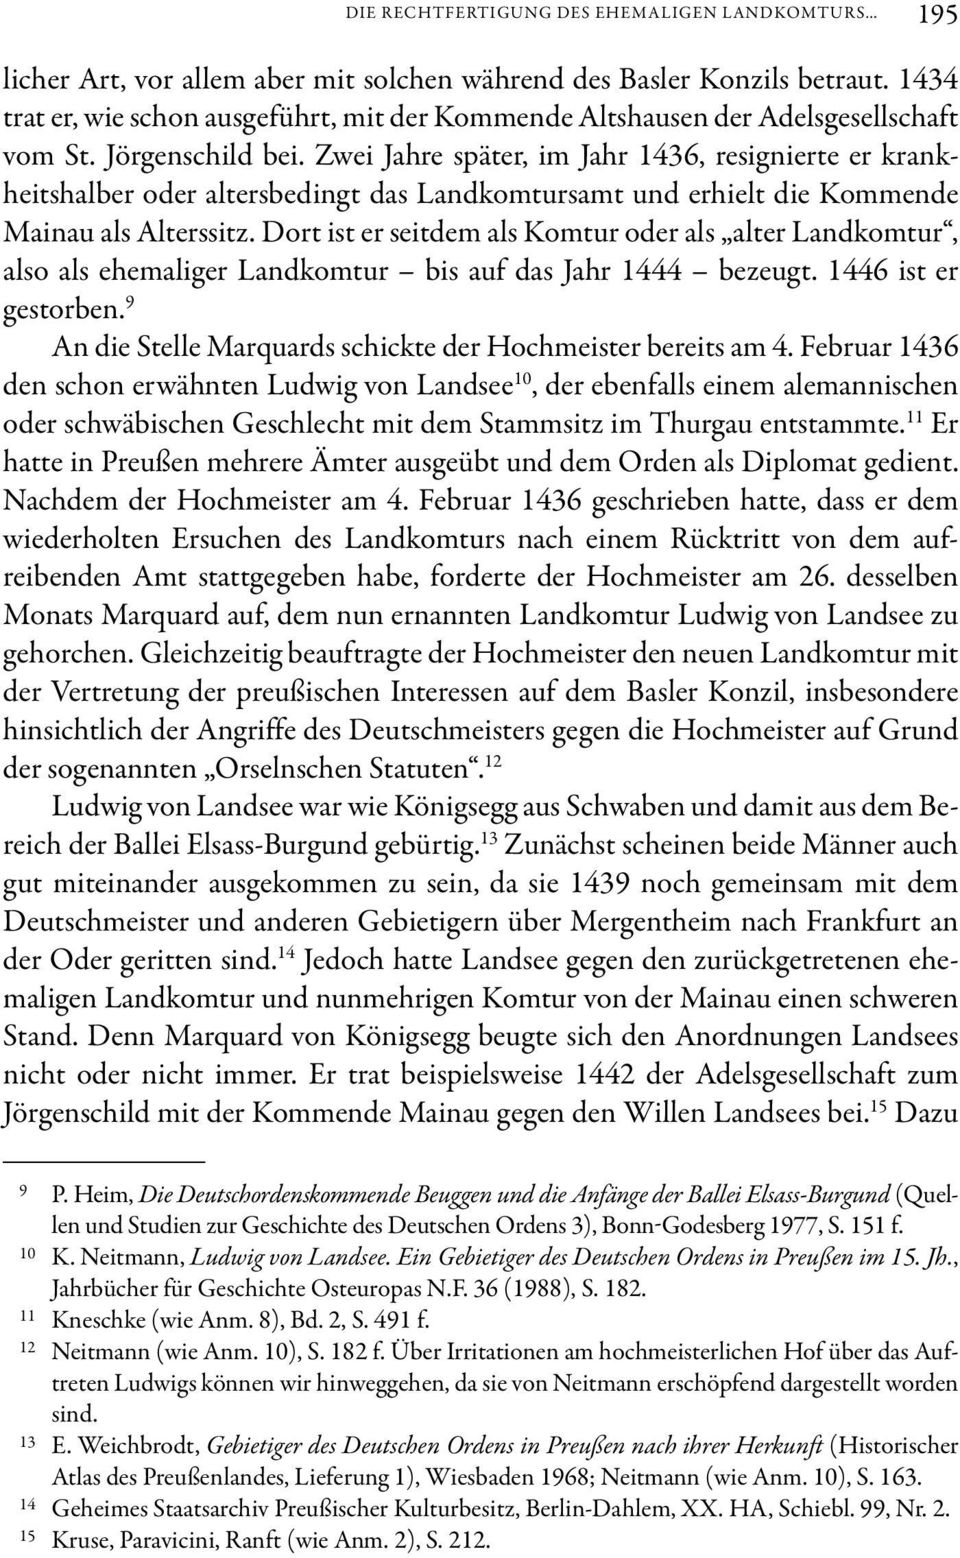 Zwei Jahre später, im Jahr 1436, resignierte er krankheitshalber oder altersbedingt das Landkomtursamt und erhielt die Kommende Mainau als Alterssitz.